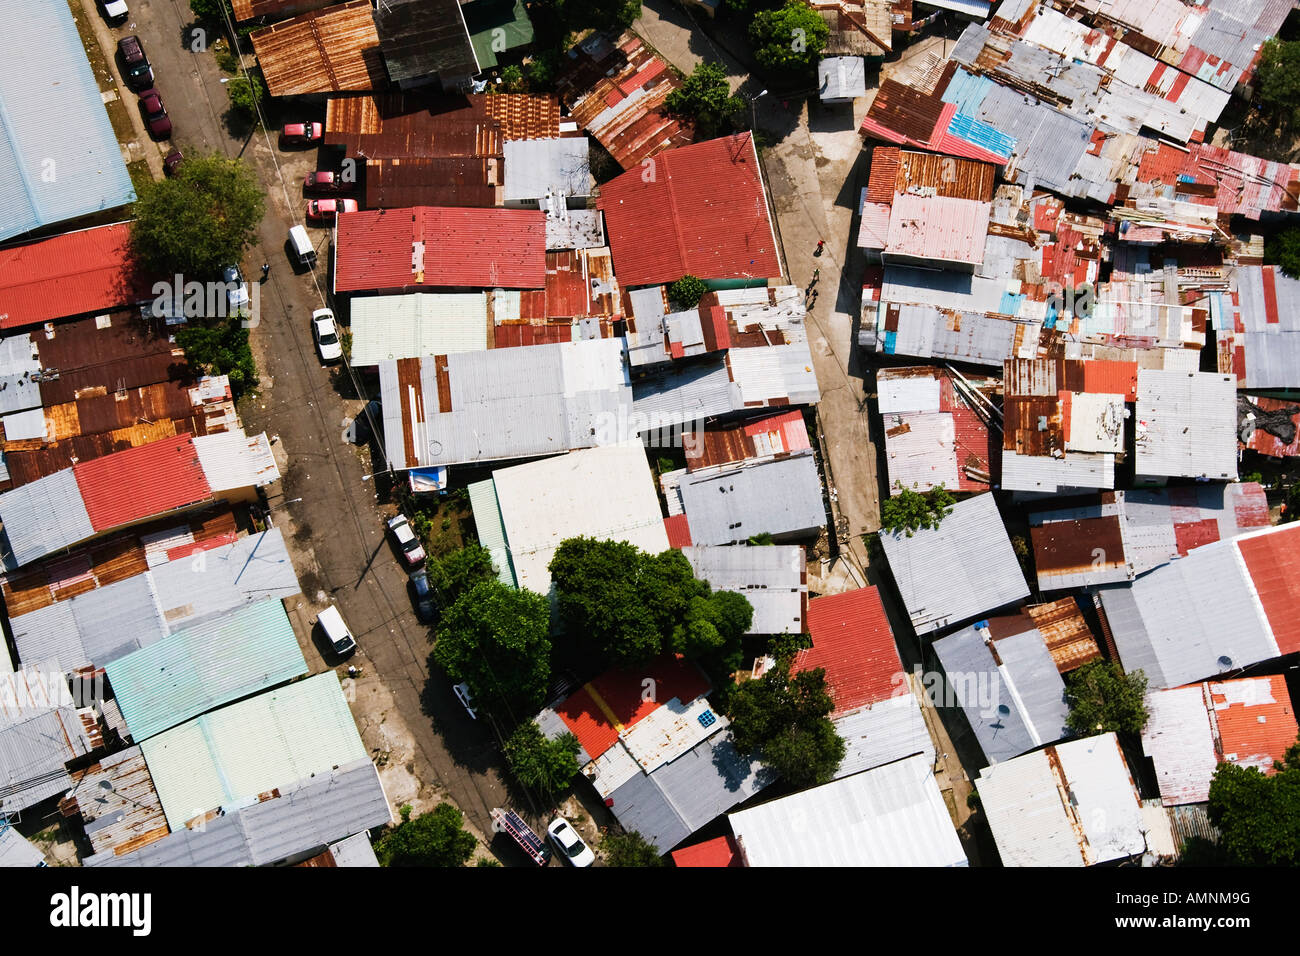 Casas chabolas, Ciudad de Panamá, Panamá Foto de stock